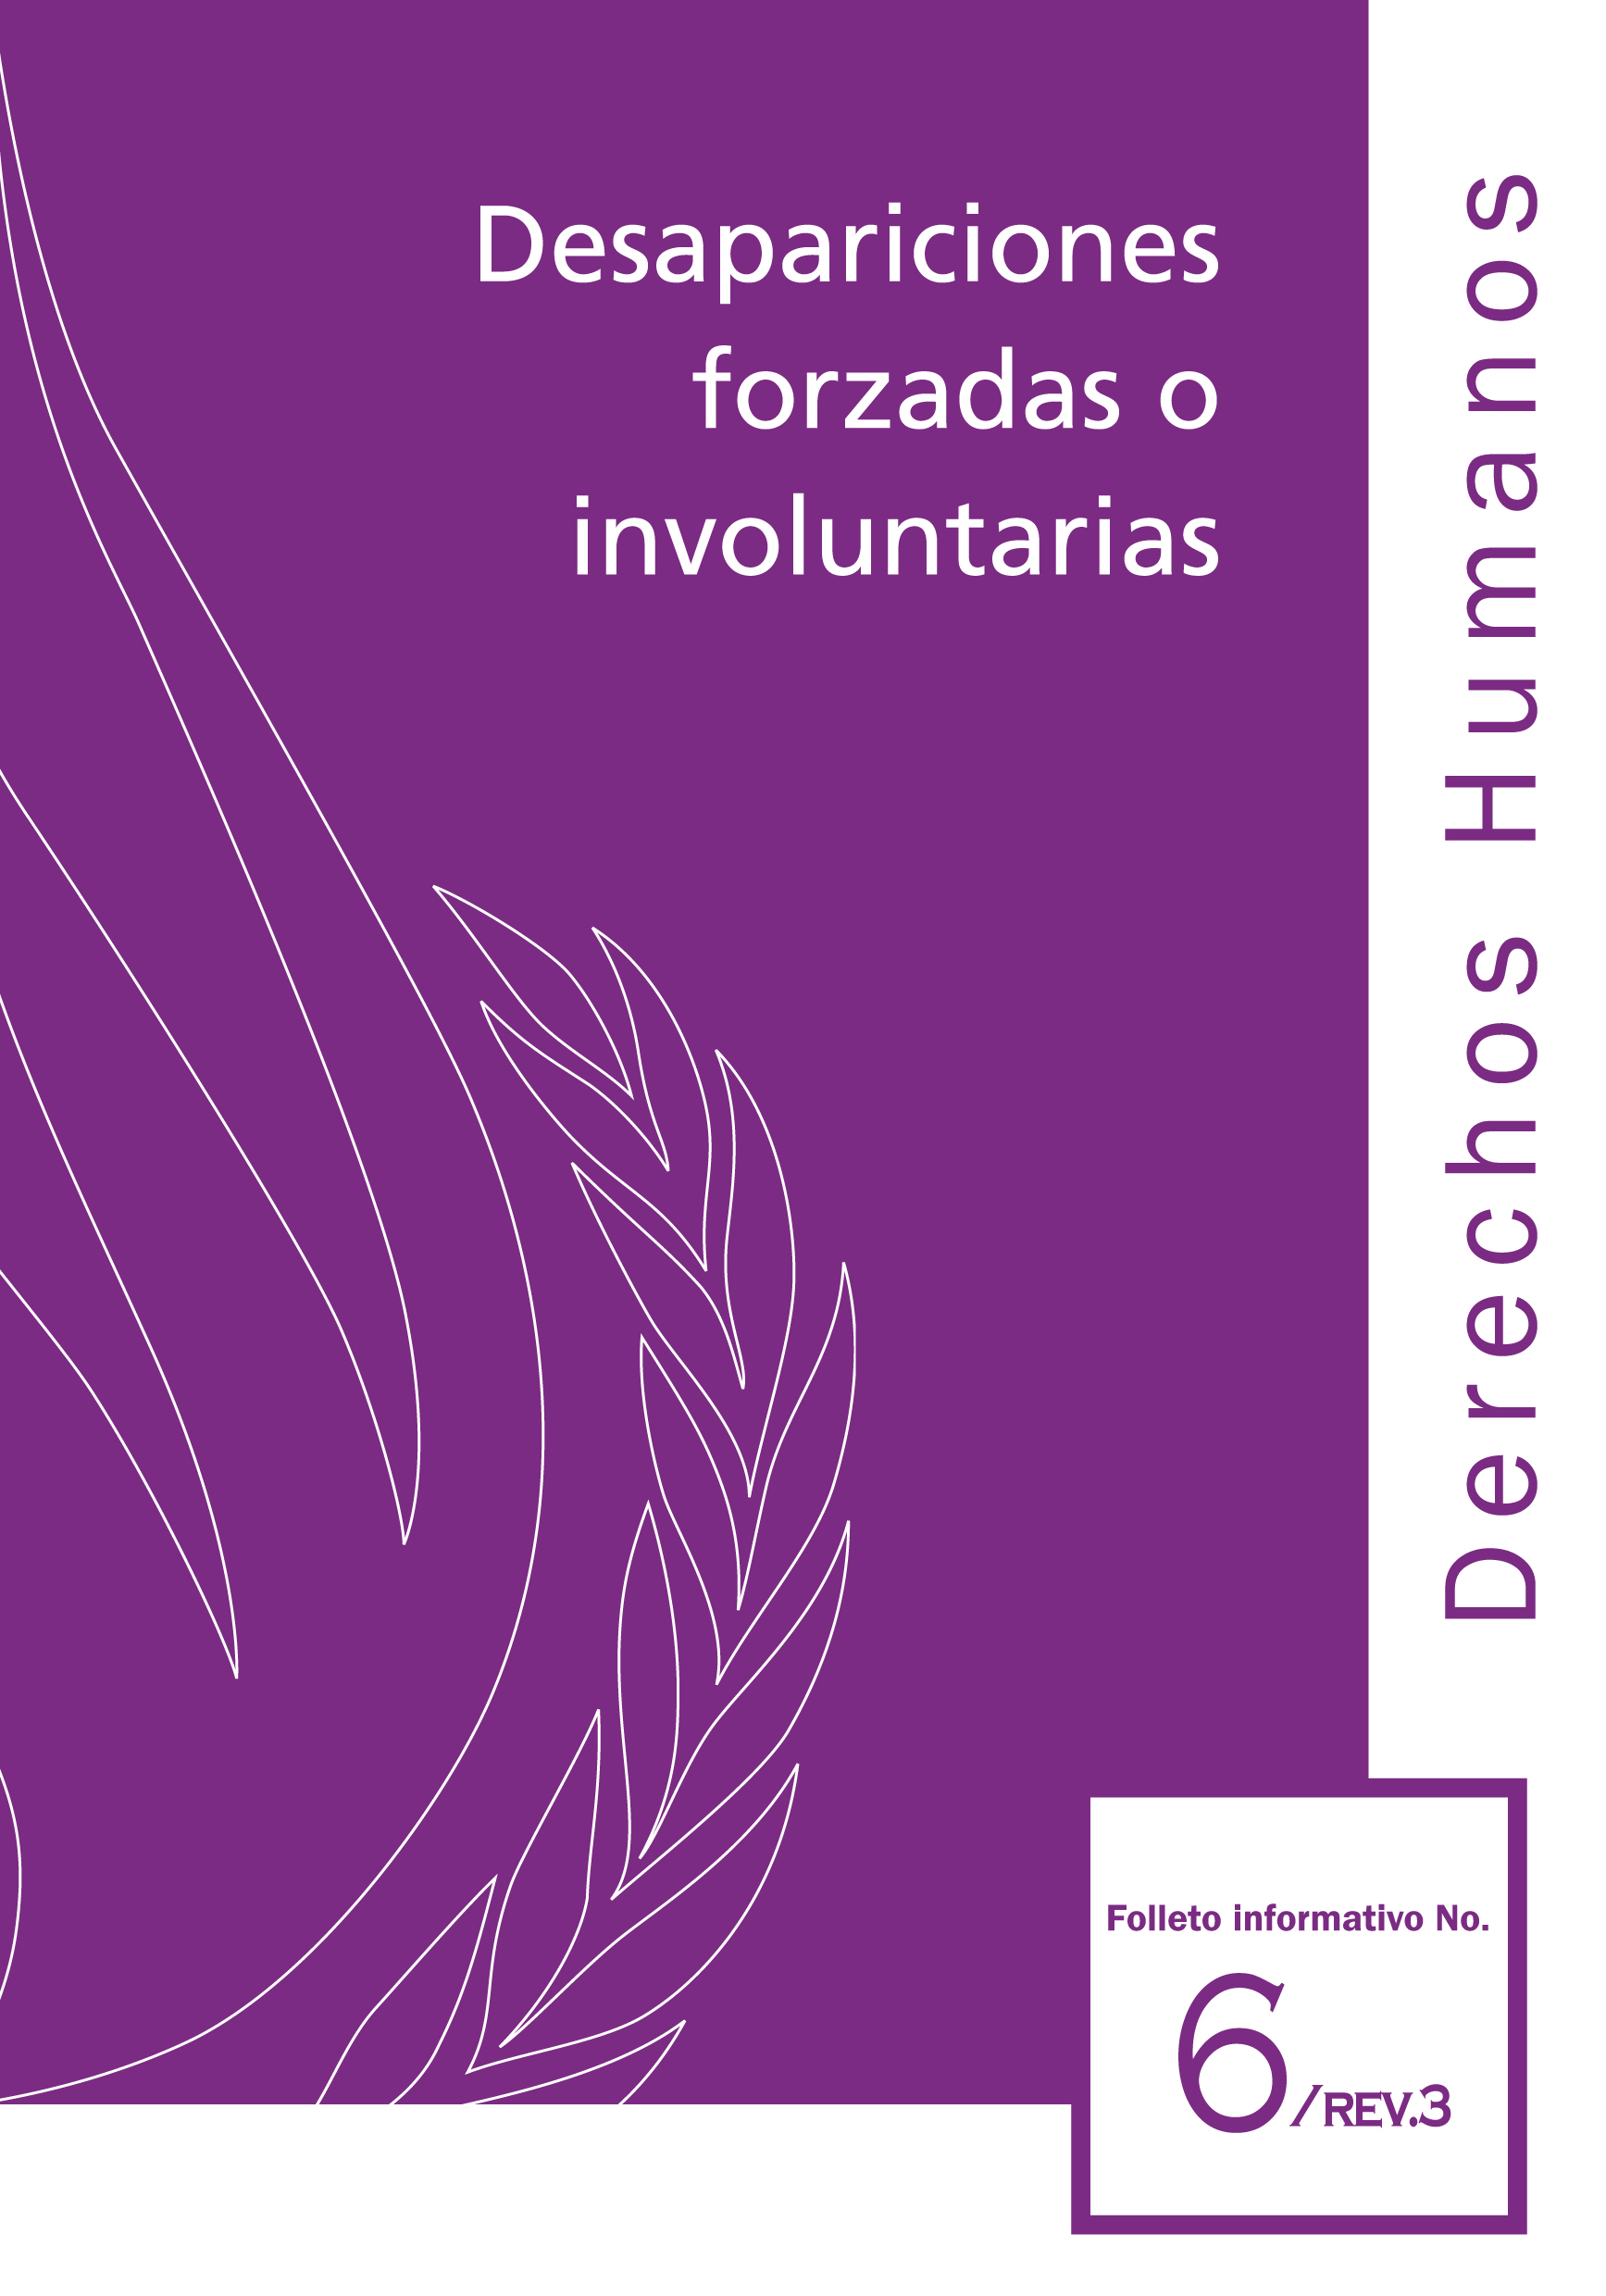 image of Derechos humanos folleto informativo No. 6, Rev. 3